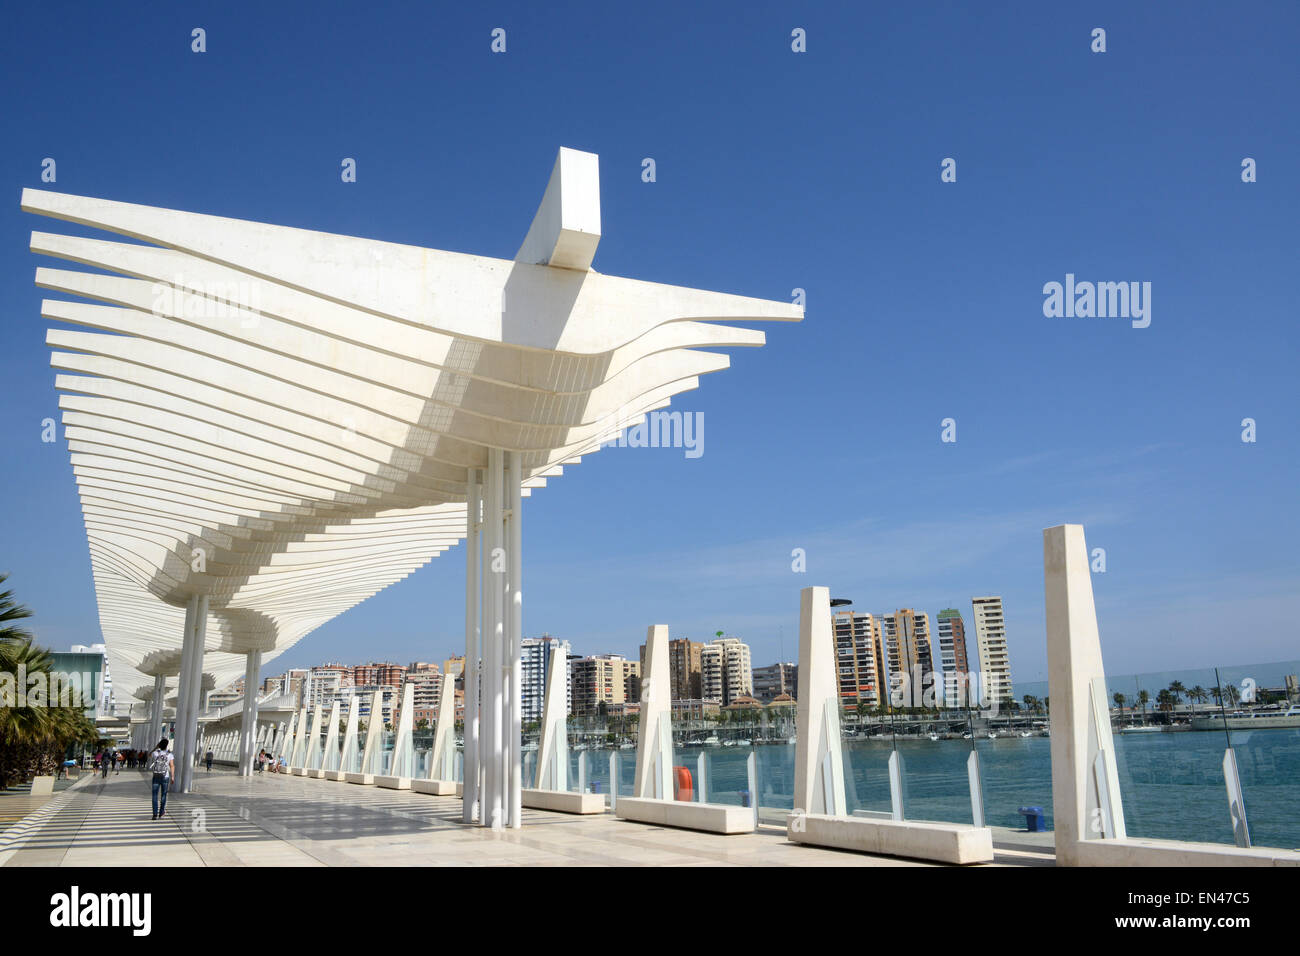 Malaga promenade in Spain modern architecture Stock Photo